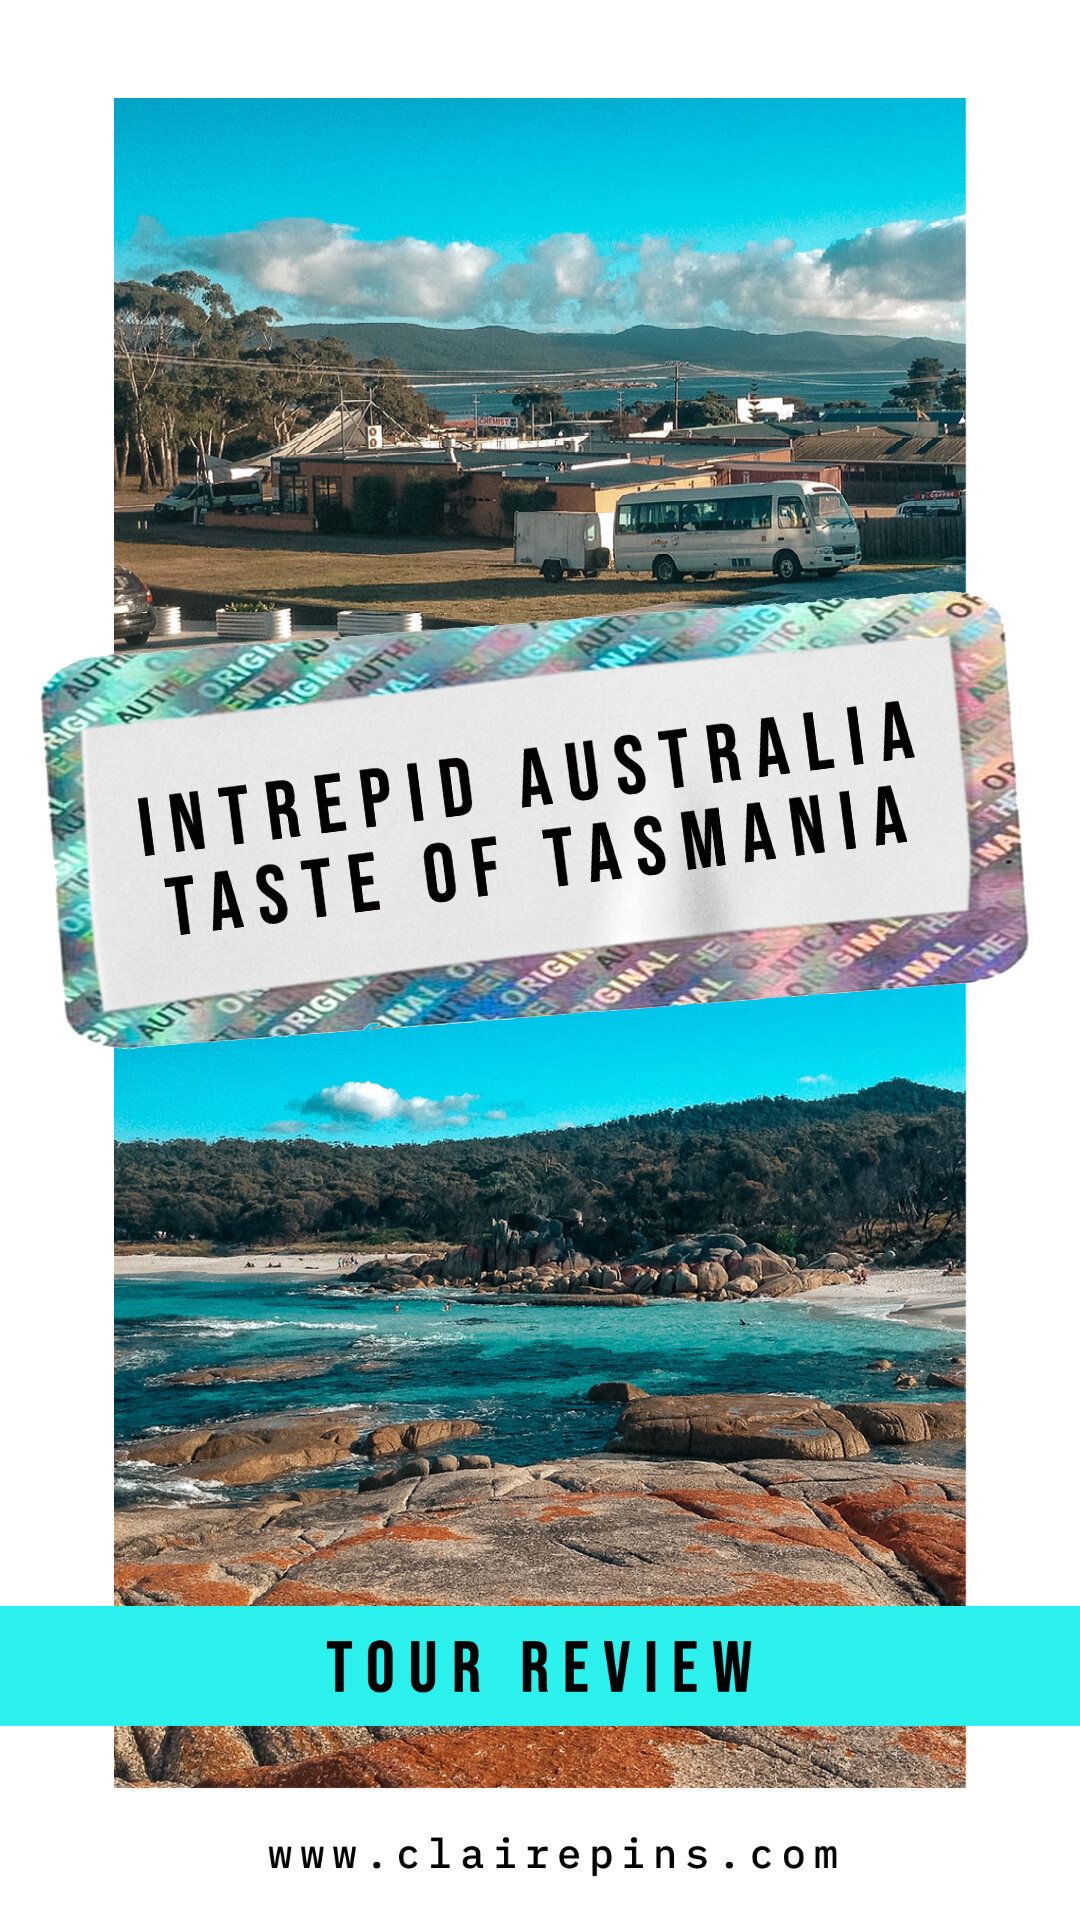 Intrepid Australia Taste of Tasmania Tour Review.jpg